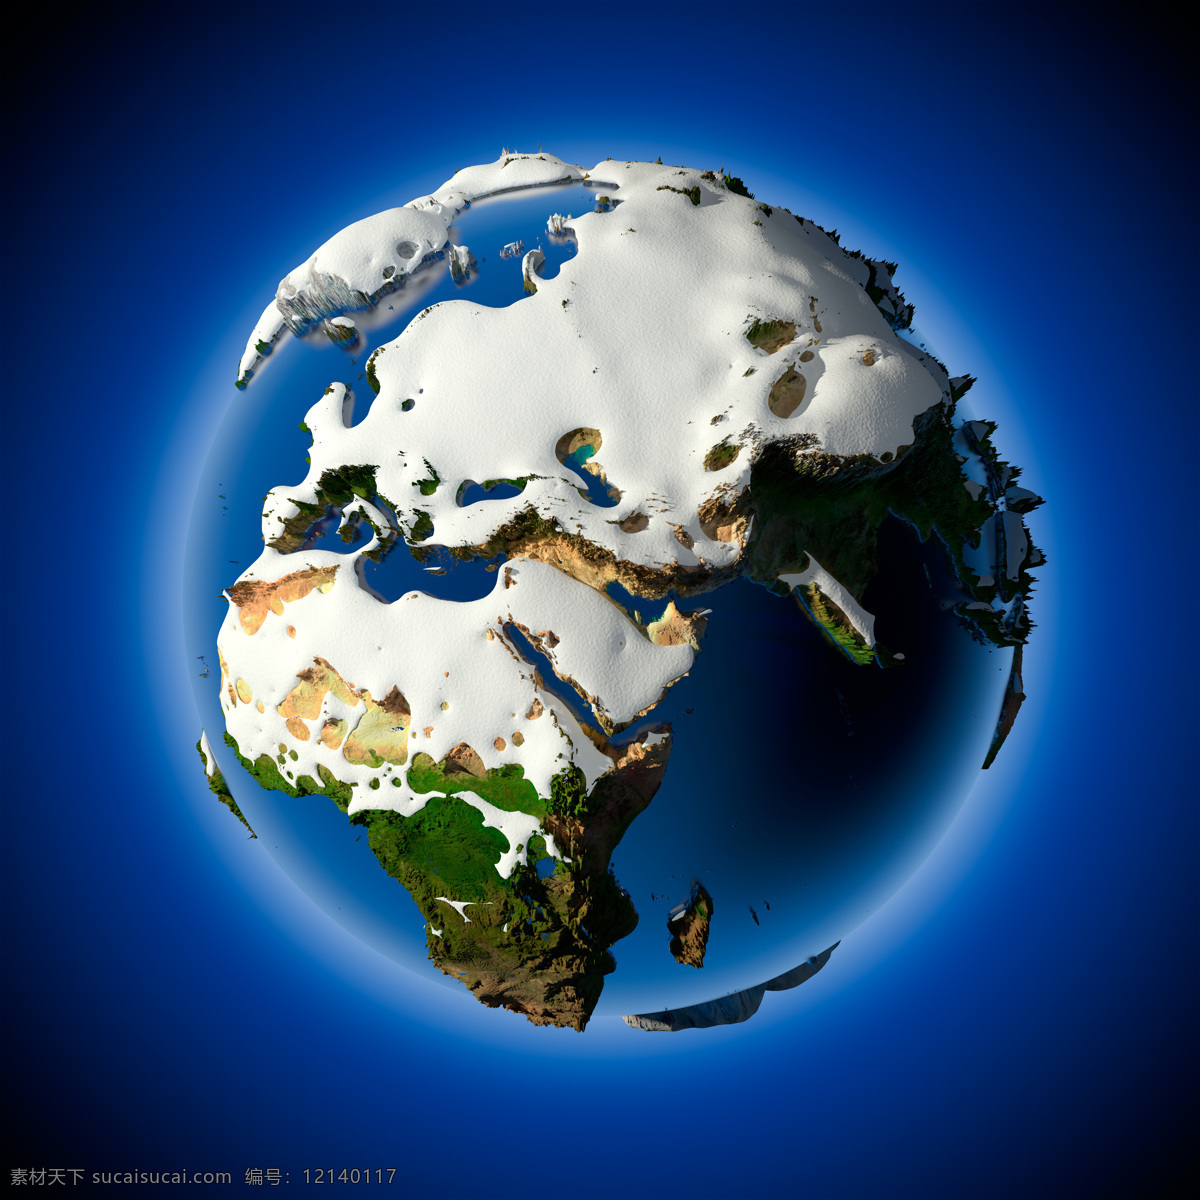 覆盖 白雪 地球 地球模型 地球素材 地球背景 立体图案 星球 地图 环保 创意图片 其他类别 环境家居 蓝色